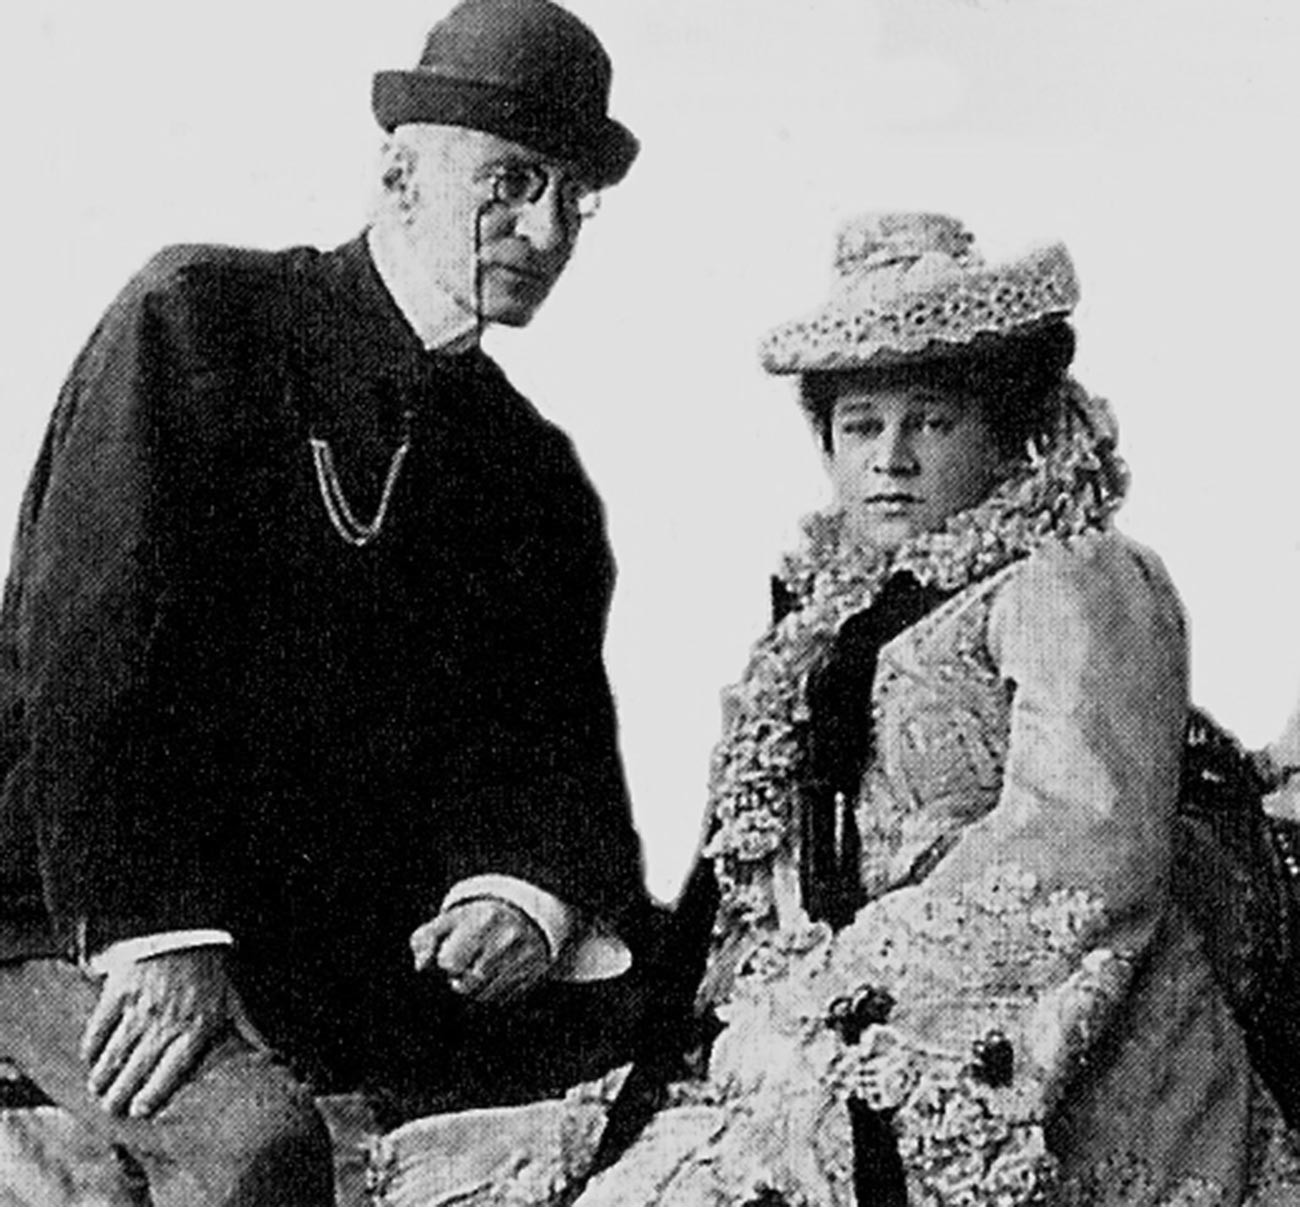 Велики кнез Николај Константинович са женом Надеждом Александровном у Ташкенту.